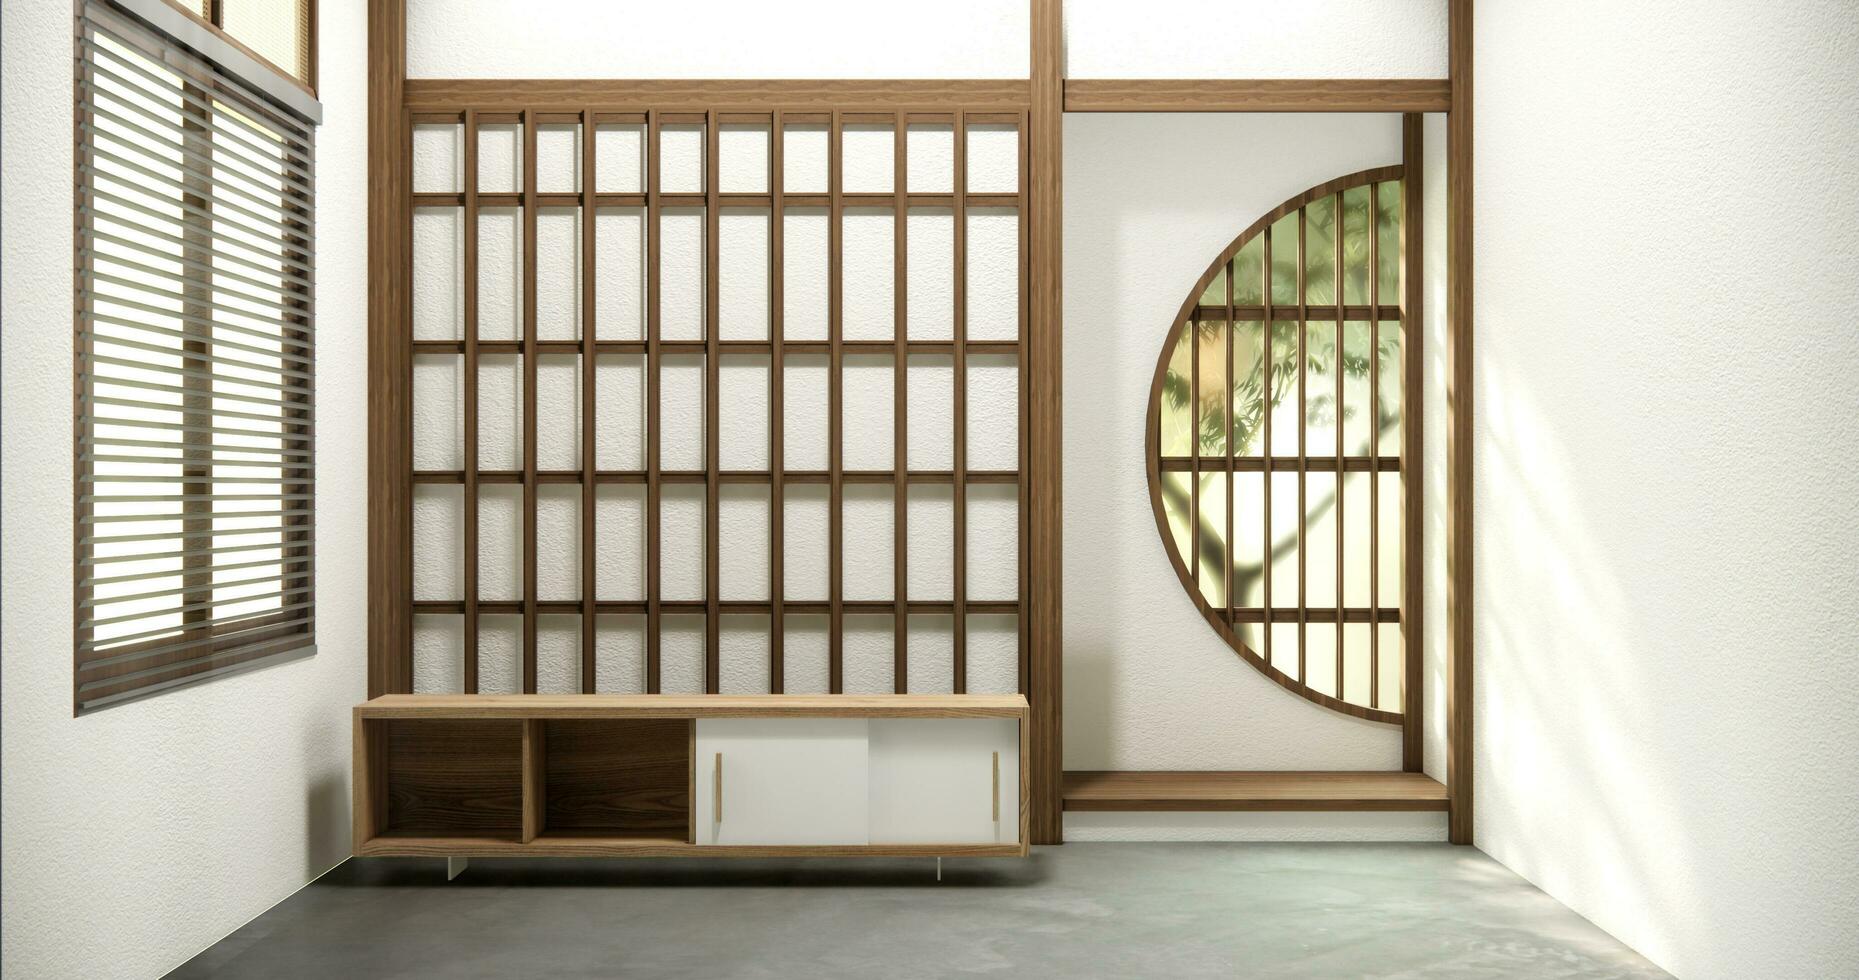 televisão gabinete dentro moderno esvaziar quarto japonês - zen estilo, mínimo projetos. foto